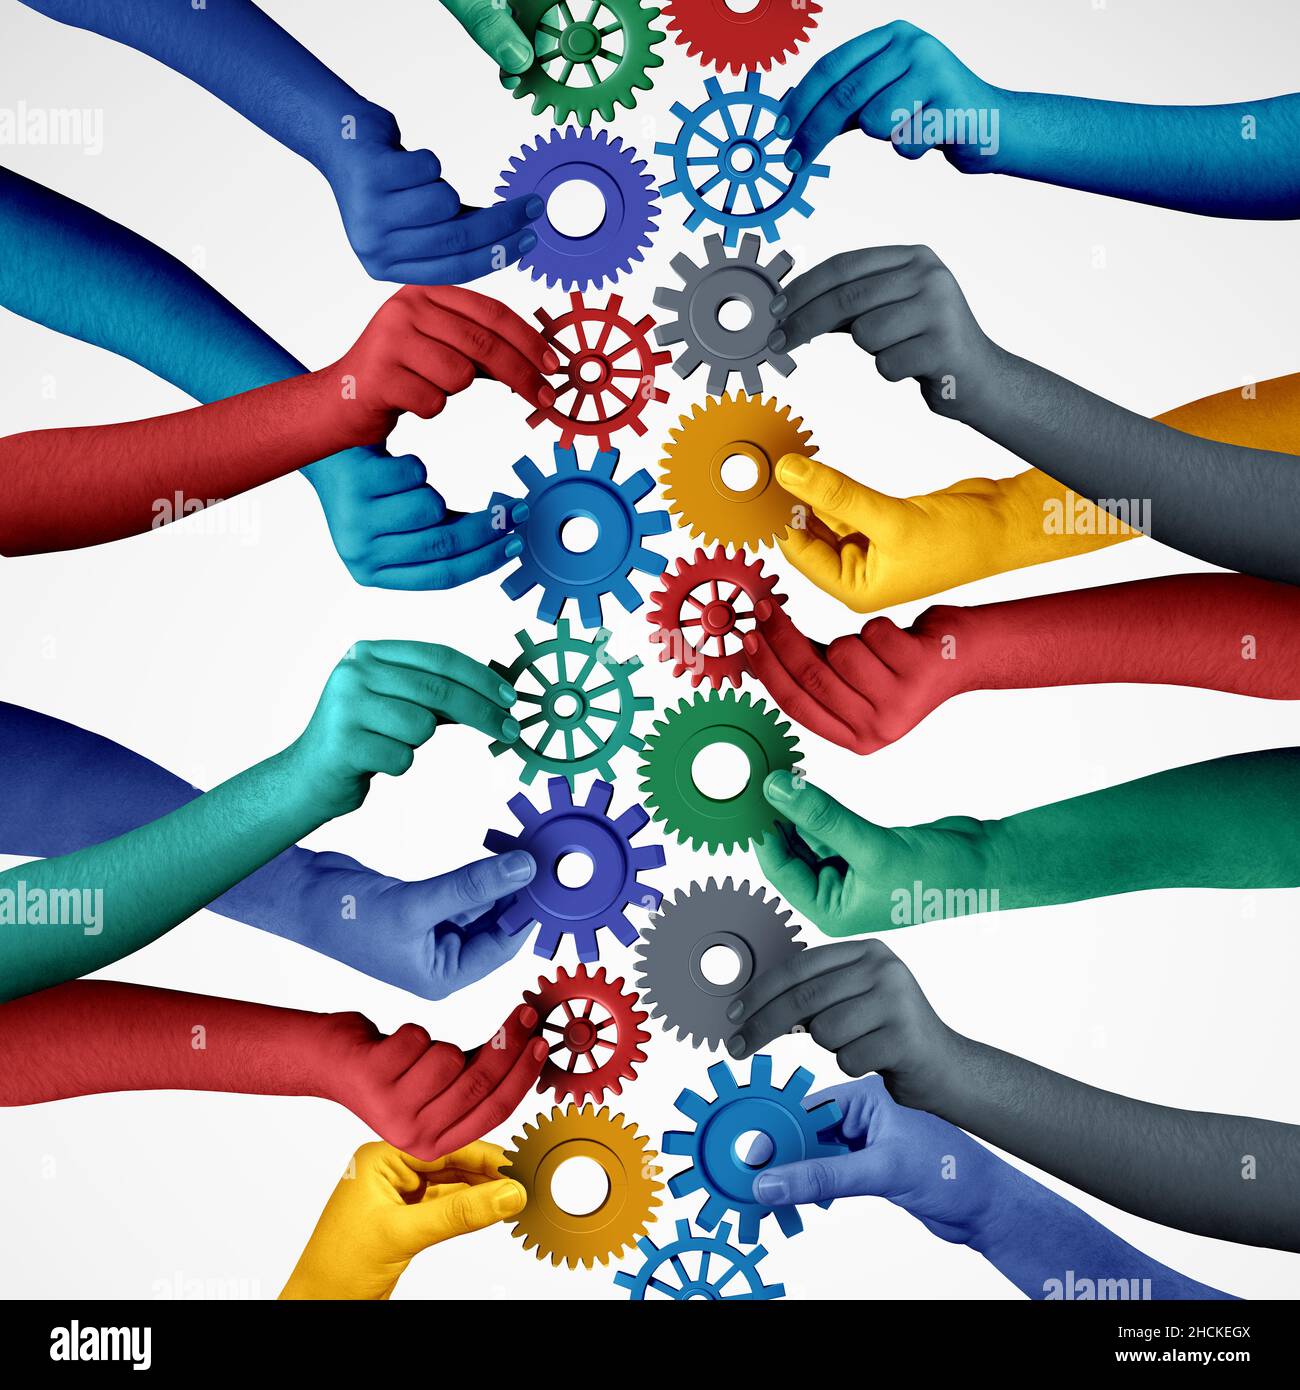 Teamwork-Collaboration-Konzept und die Verbindung von Einheit oder Teamidee als geschäftliche Metapher für den Beitritt zu einer Partnerschaft, da verschiedene Menschen miteinander verbunden sind. Stockfoto